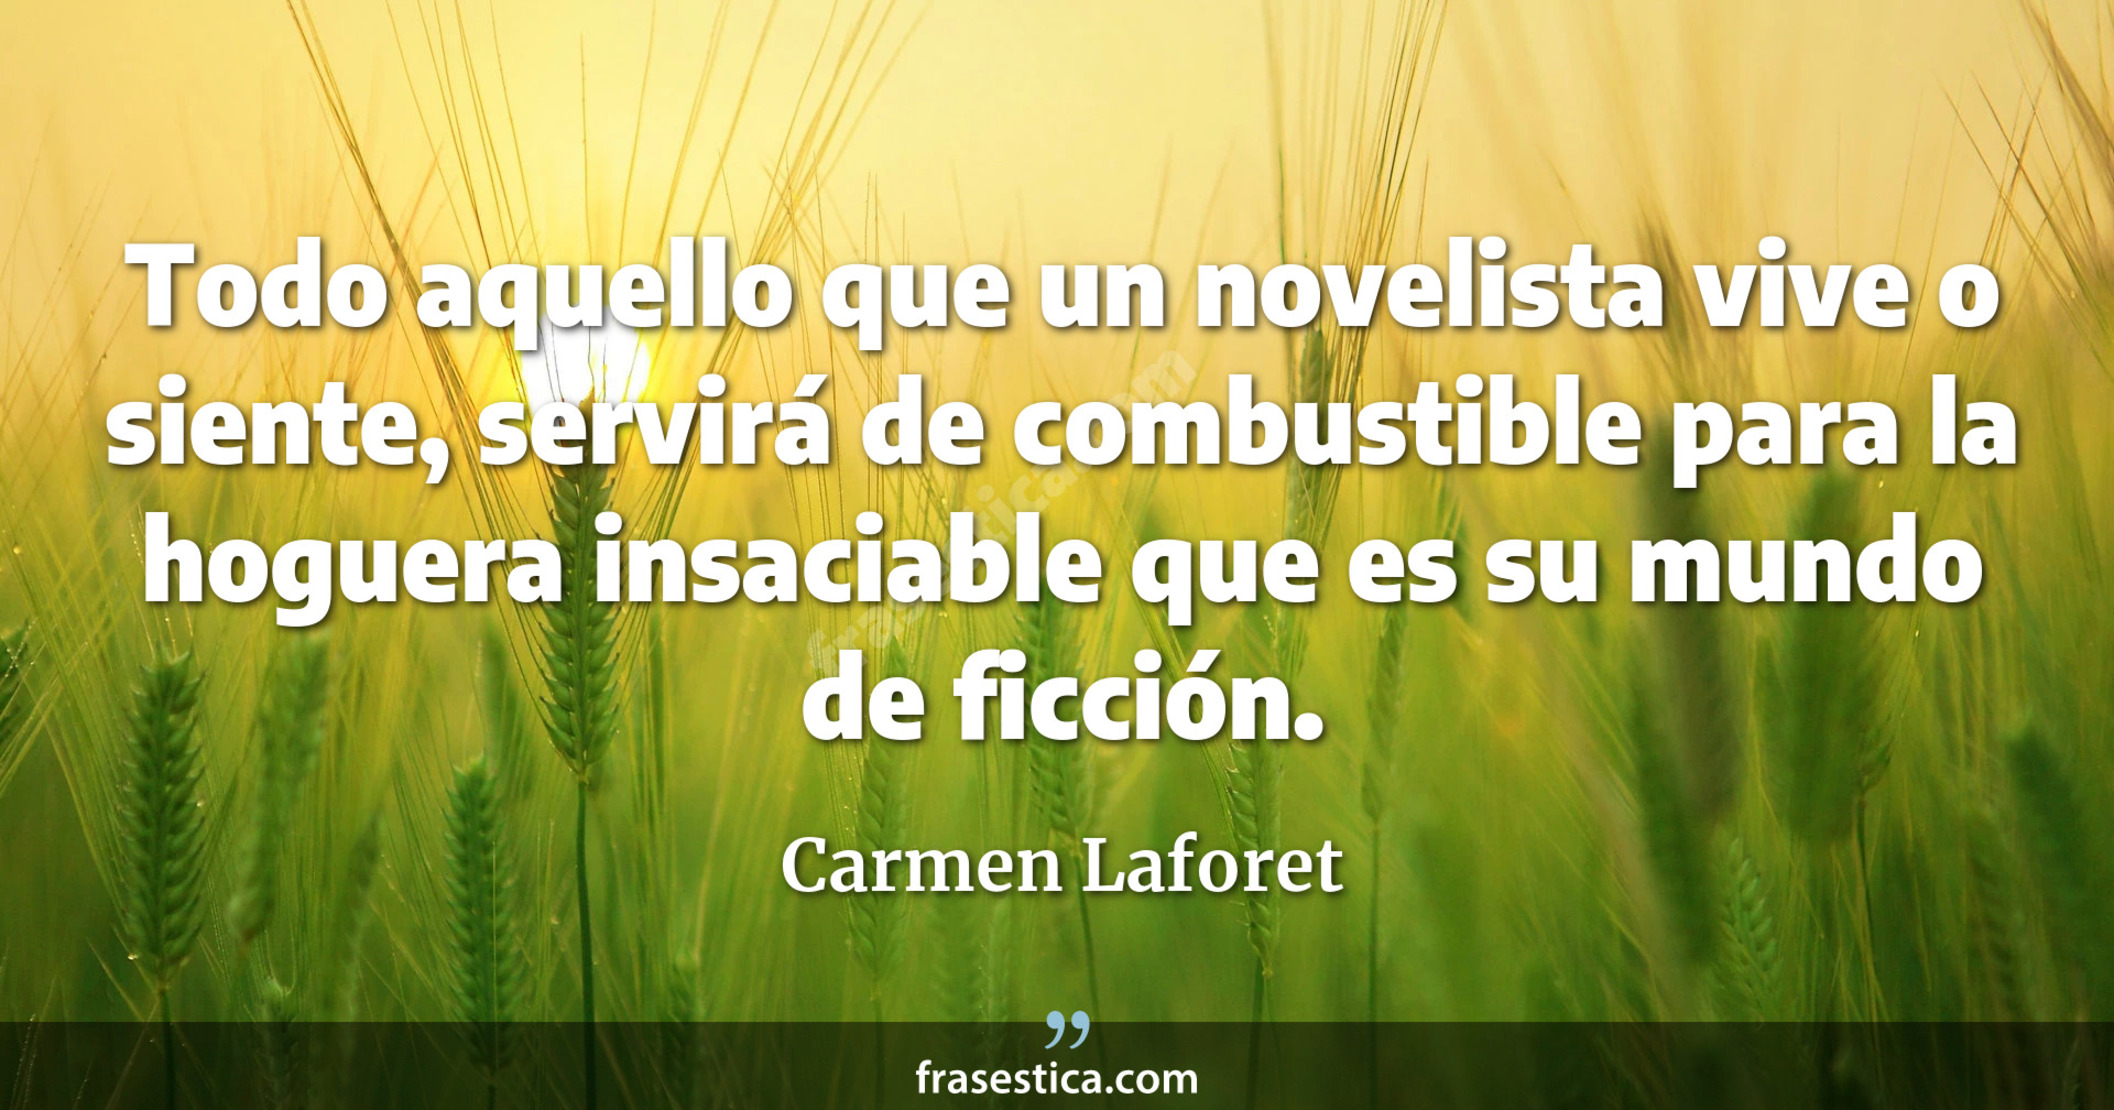 Todo aquello que un novelista vive o siente, servirá de combustible para la hoguera insaciable que es su mundo de ficción. - Carmen Laforet